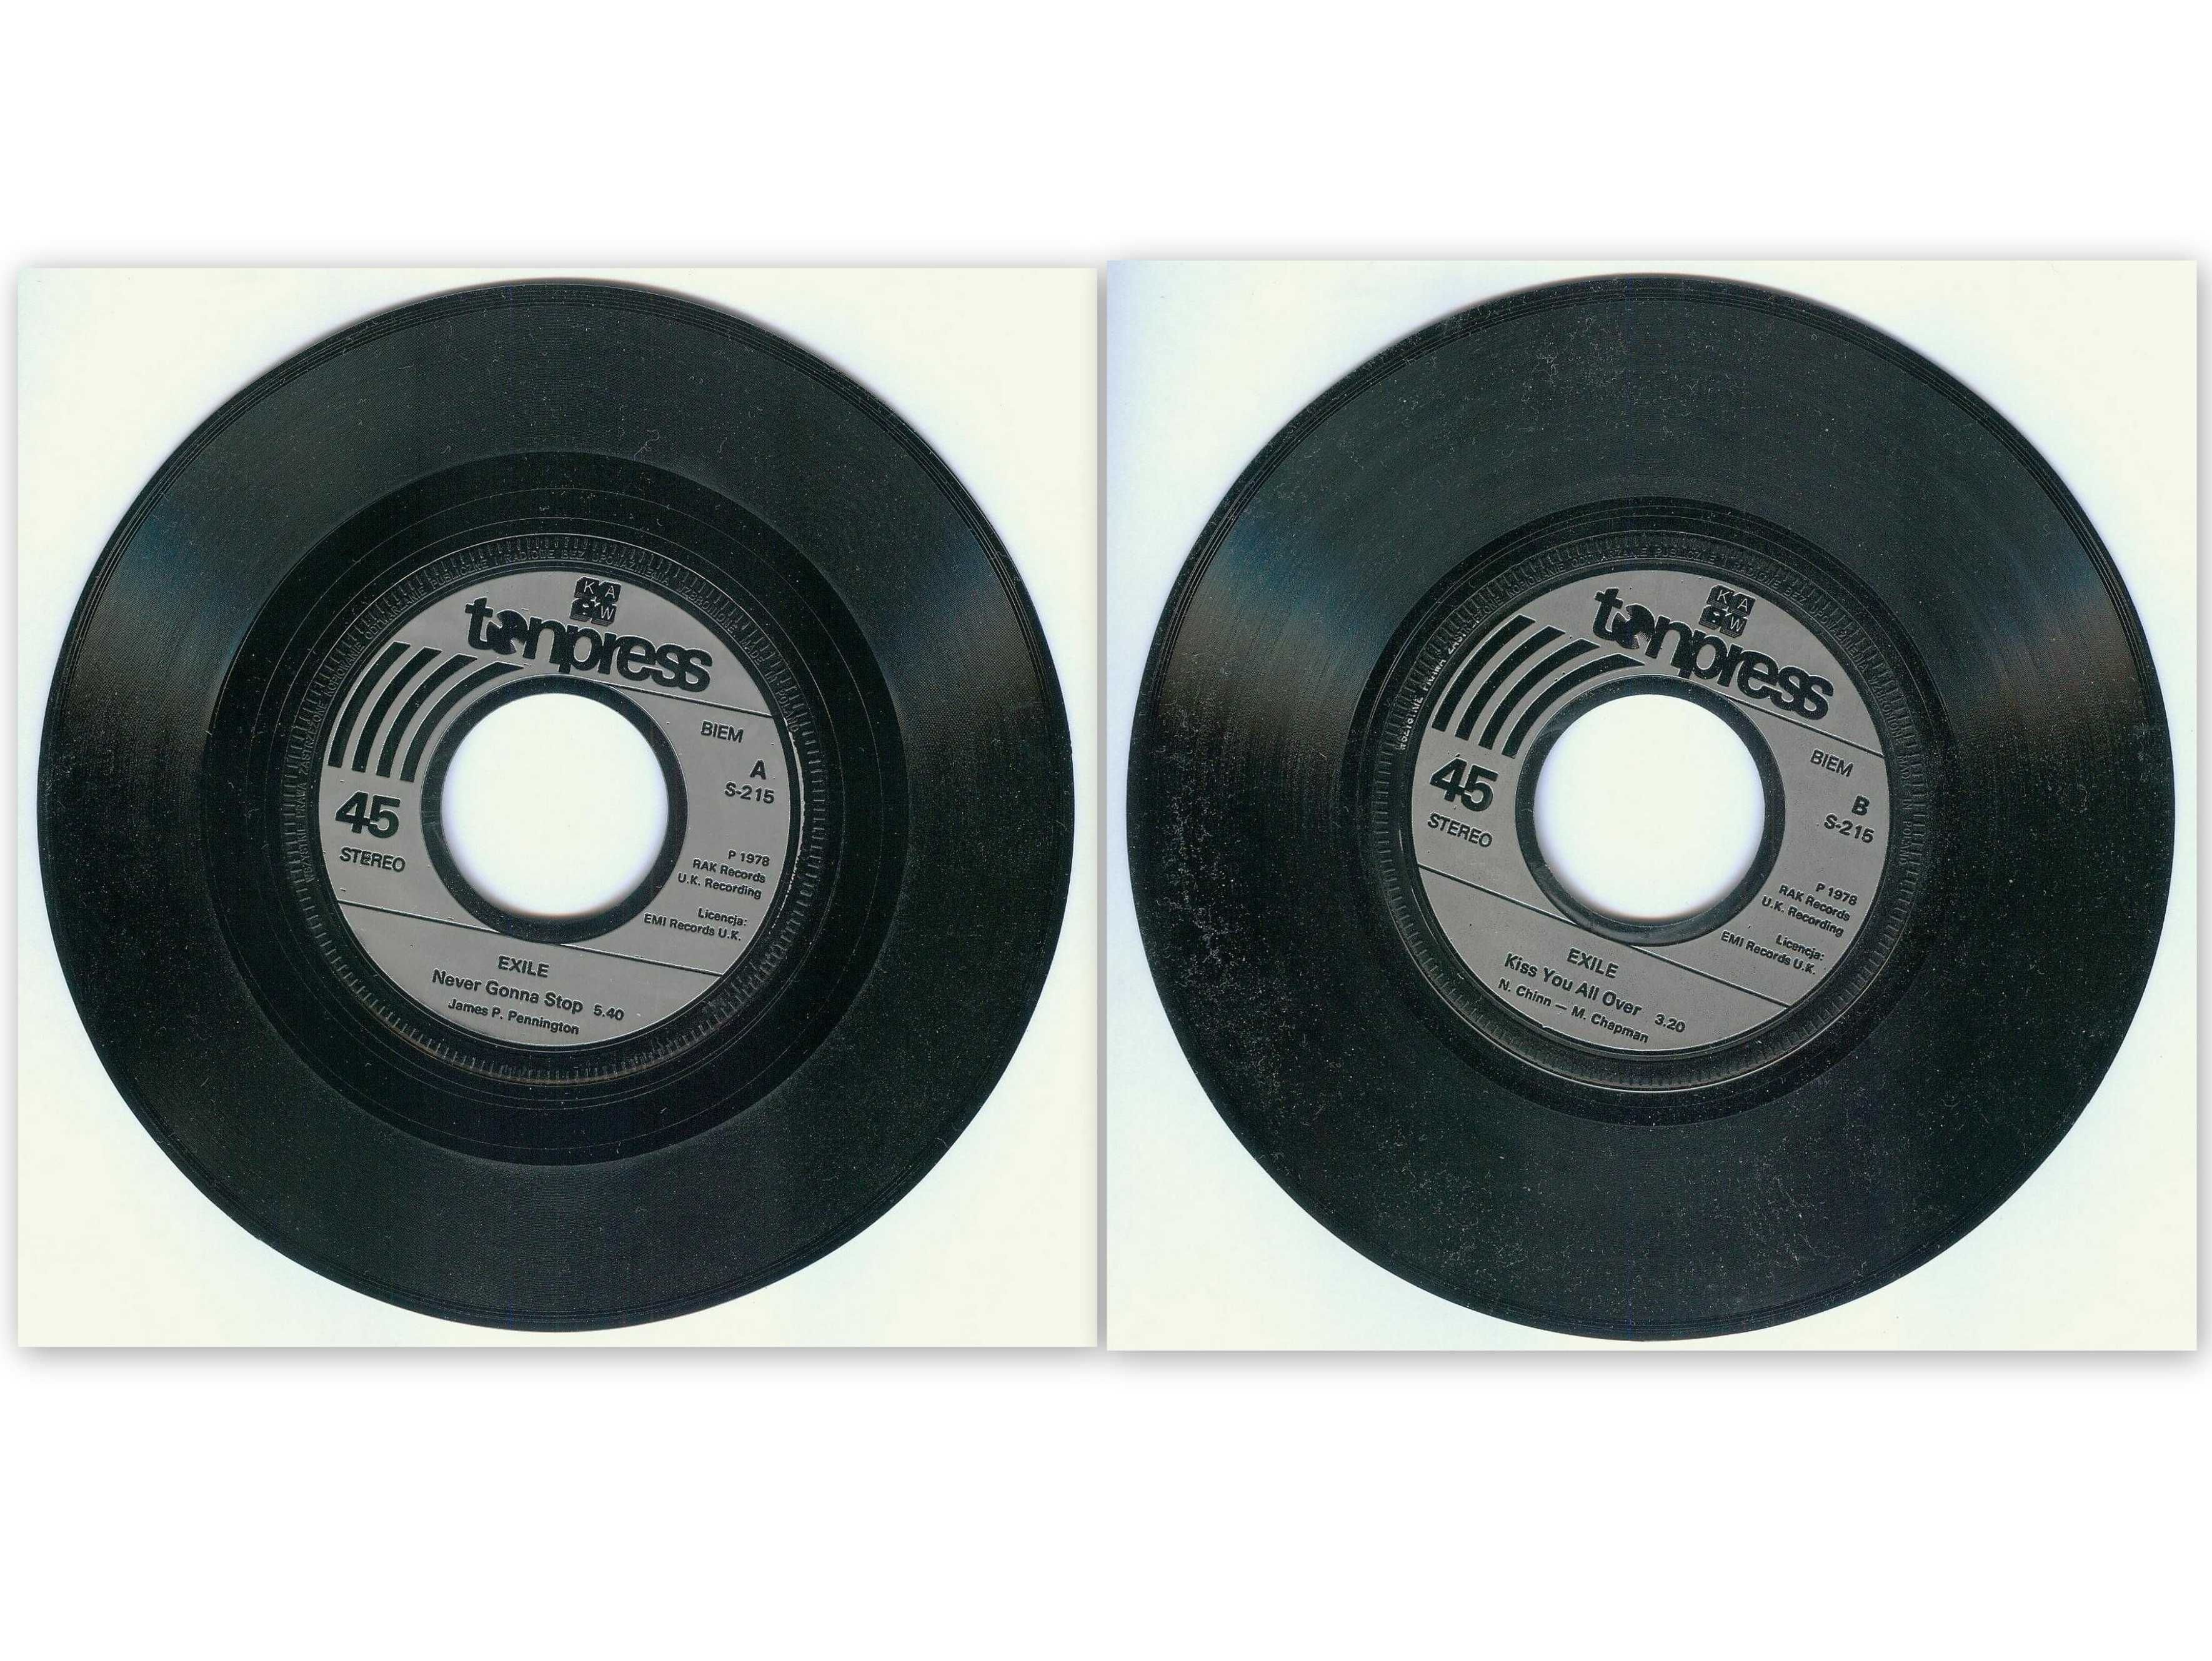 Płyta winylowa 7" (mała) - EXILE - Tonpress S-215  wyd. 1978 r.